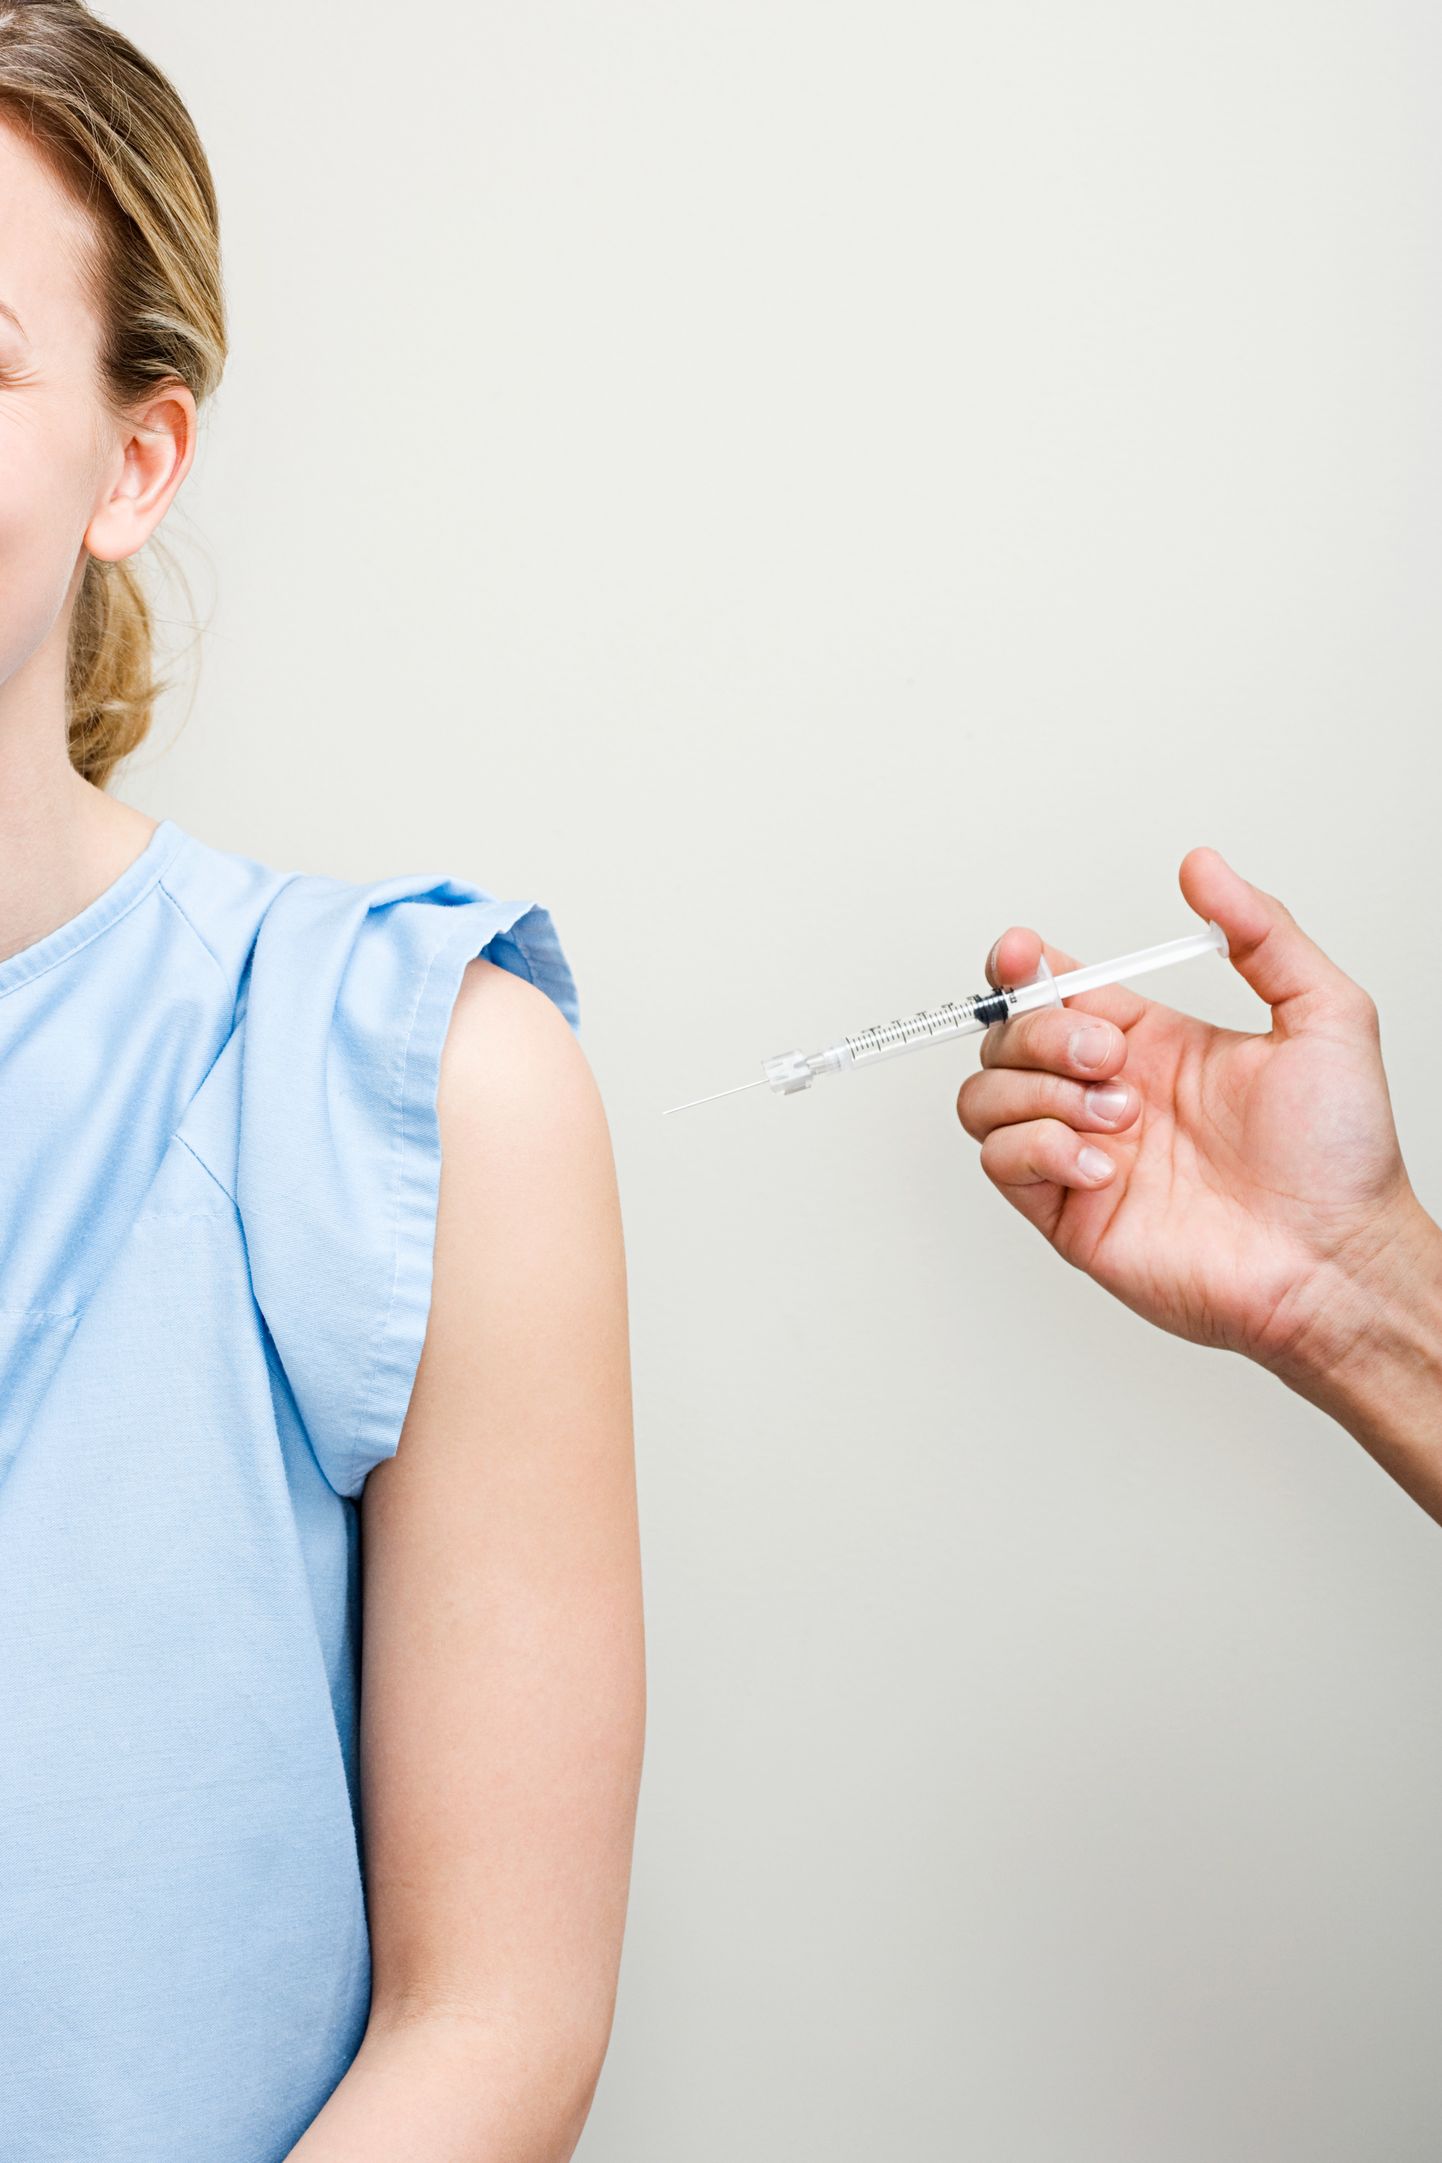 Подростки в возрасте от 15 до 18 лет могут бесплатно вакцинироваться против ВПЧ.